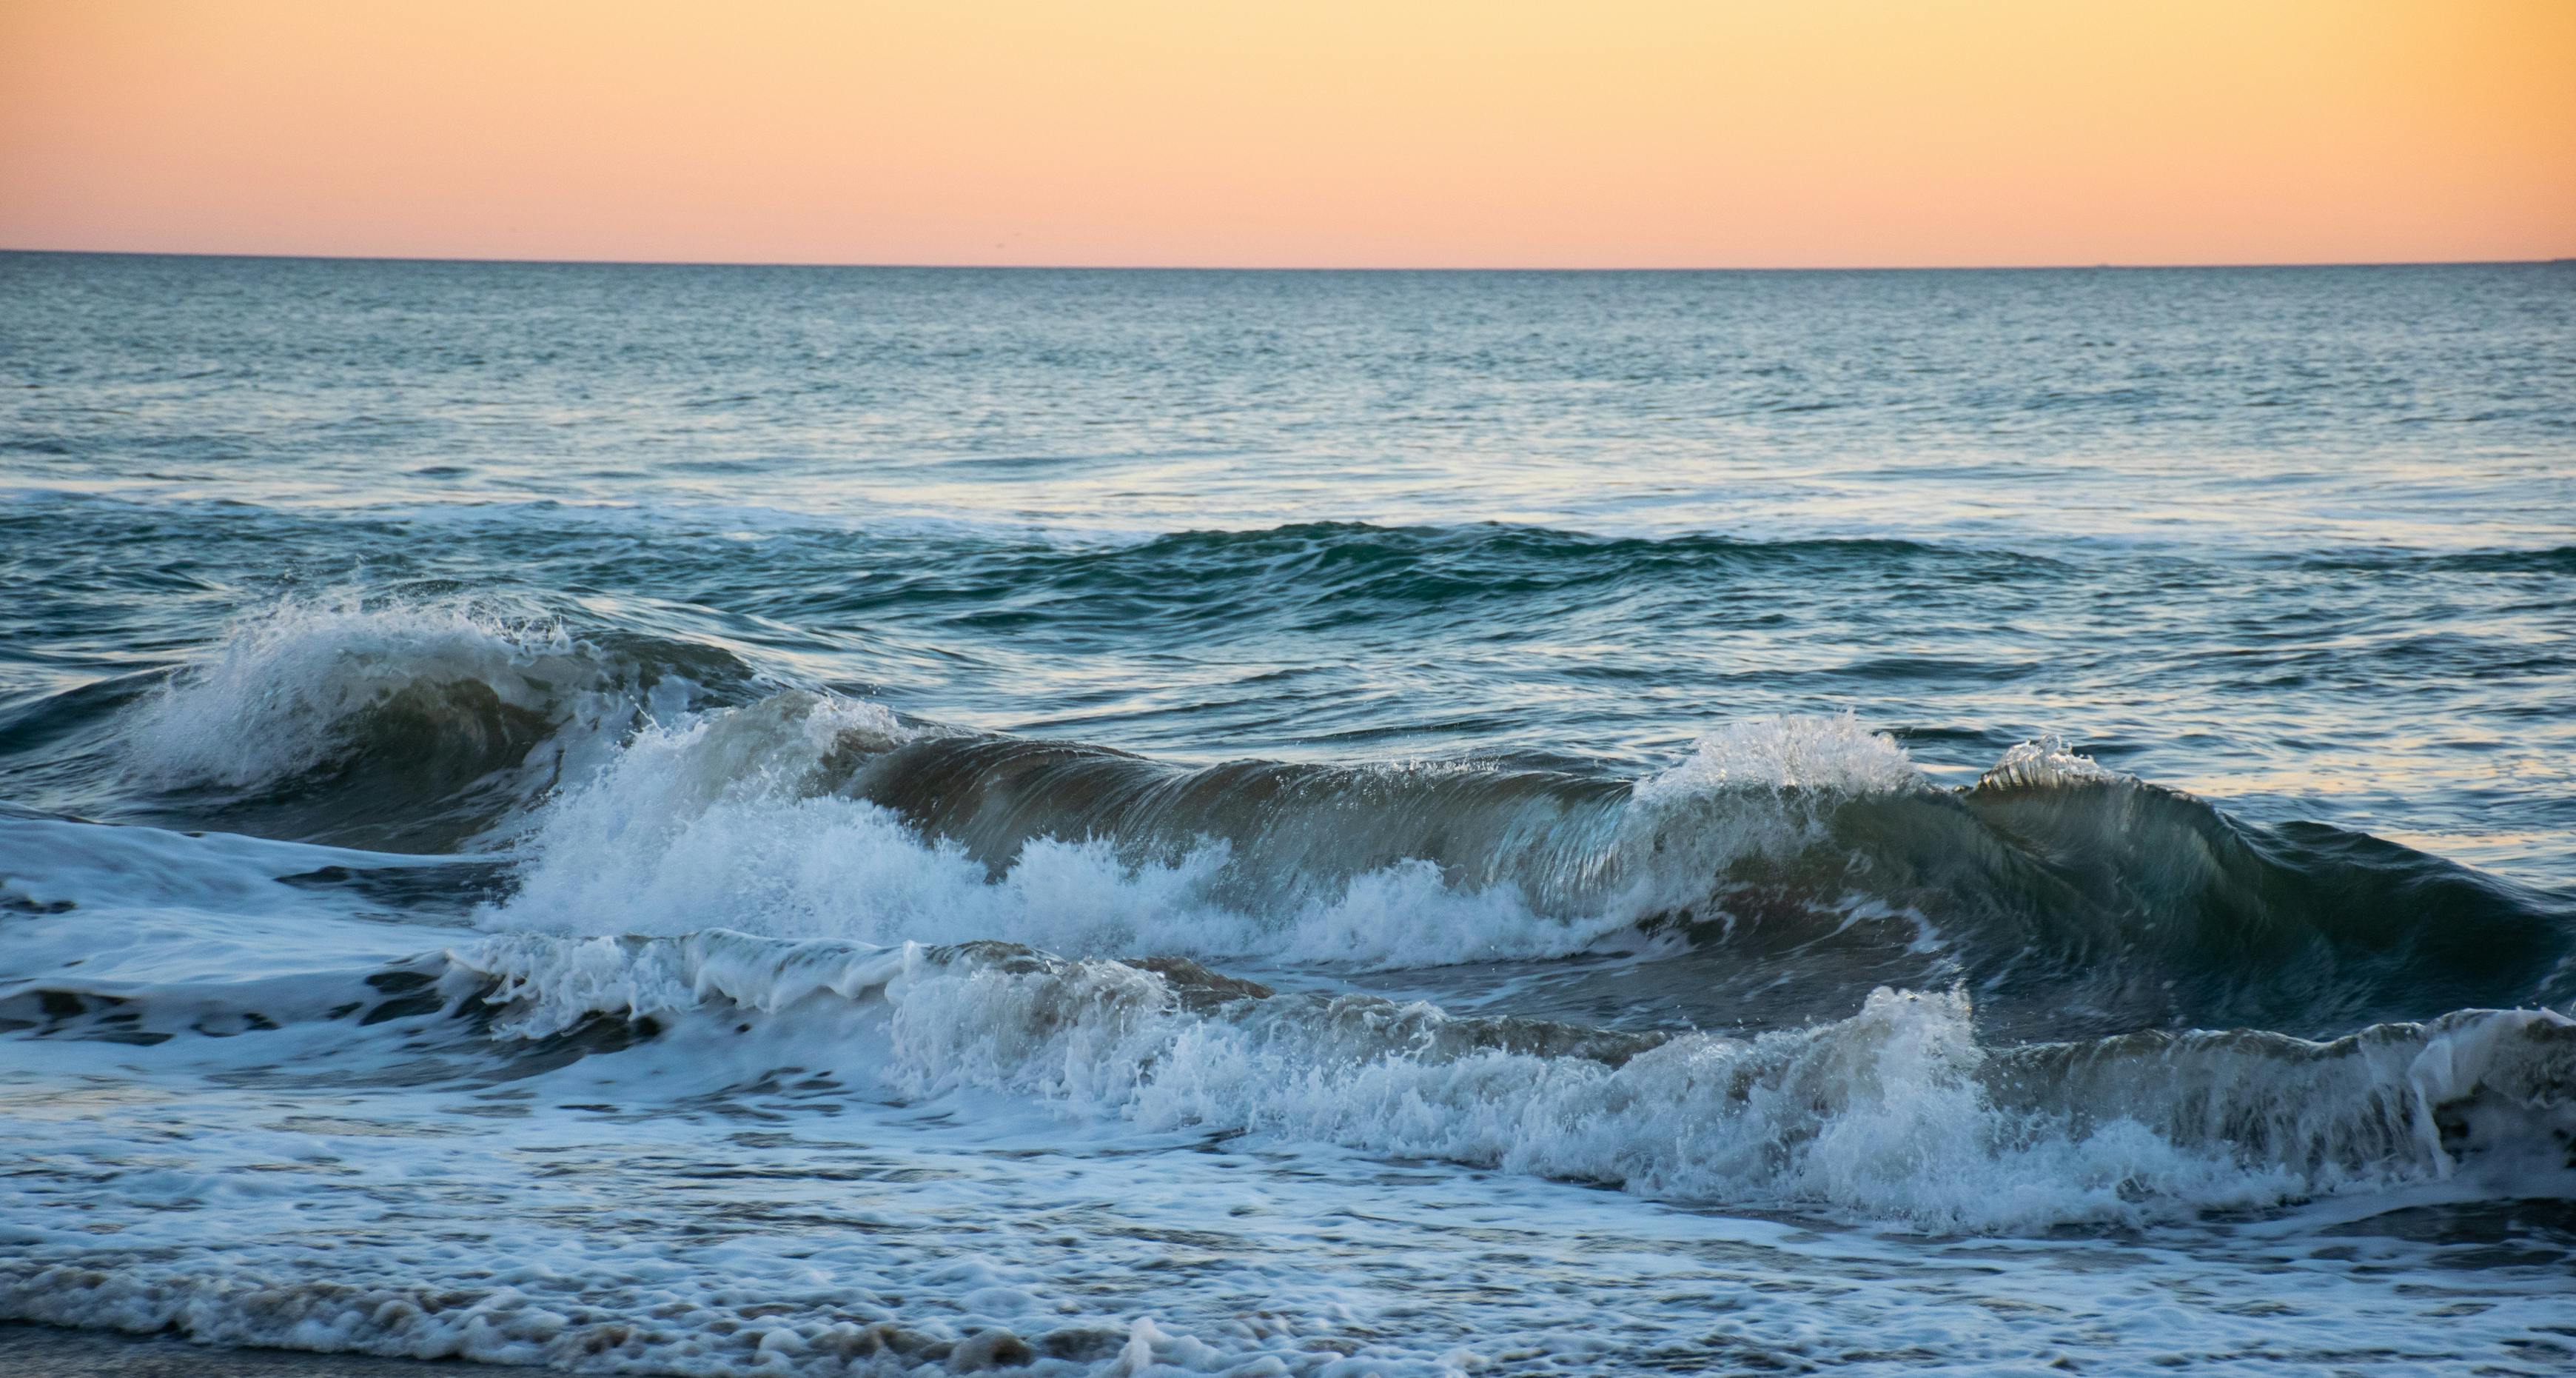 Ocean Waves Crashing On Shore During Sunset · Free Stock Photo